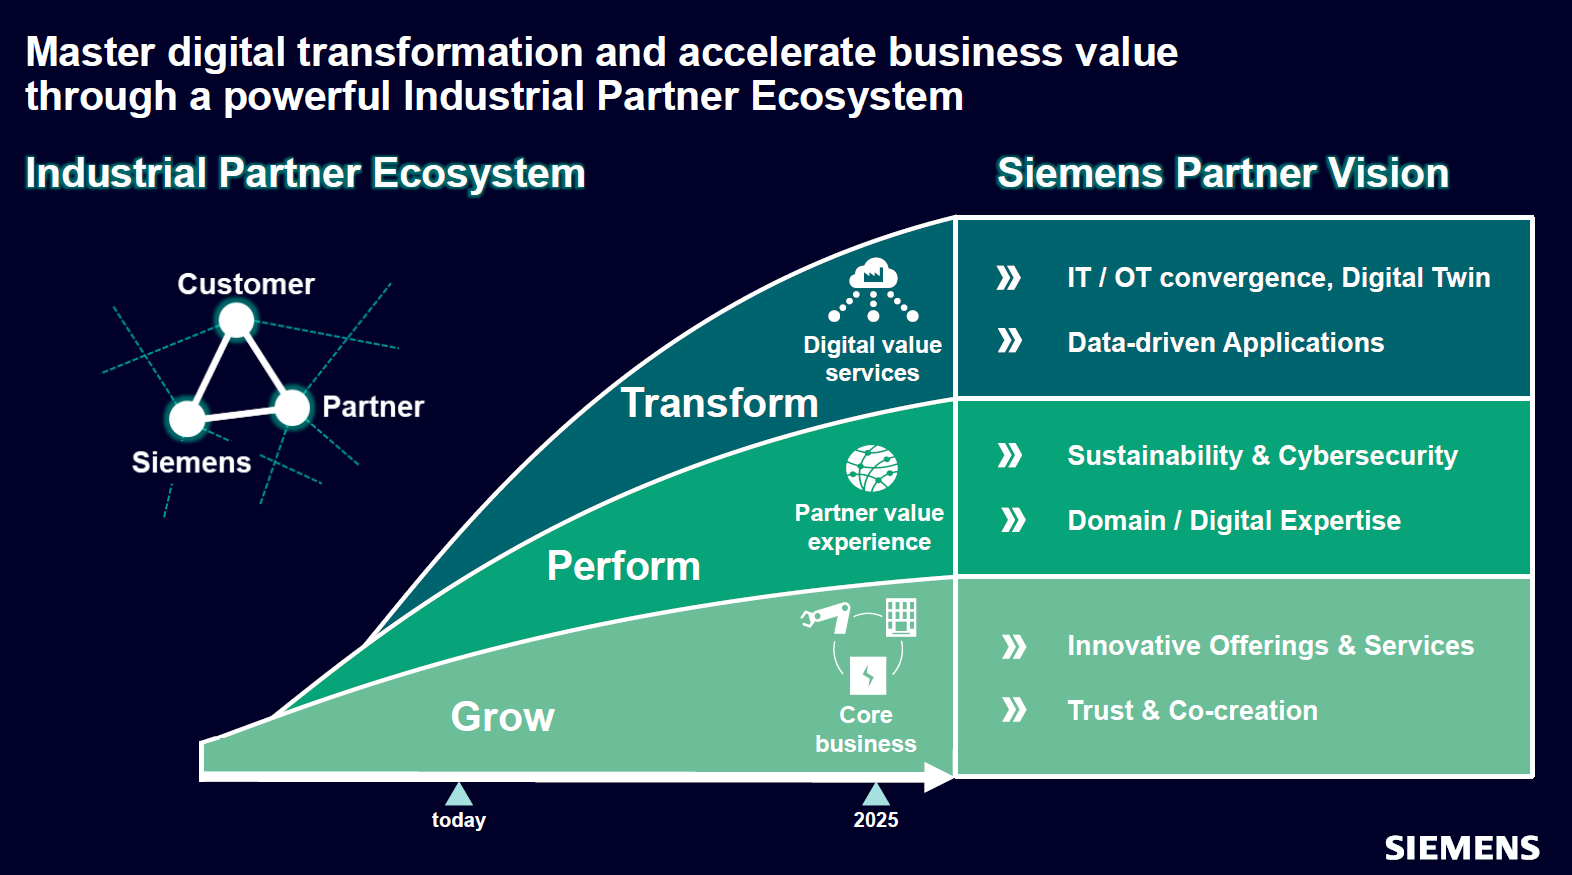 Um novo Digital Experience Center: o futuro da tecnologia aplicada no  ecossistema da Siemens